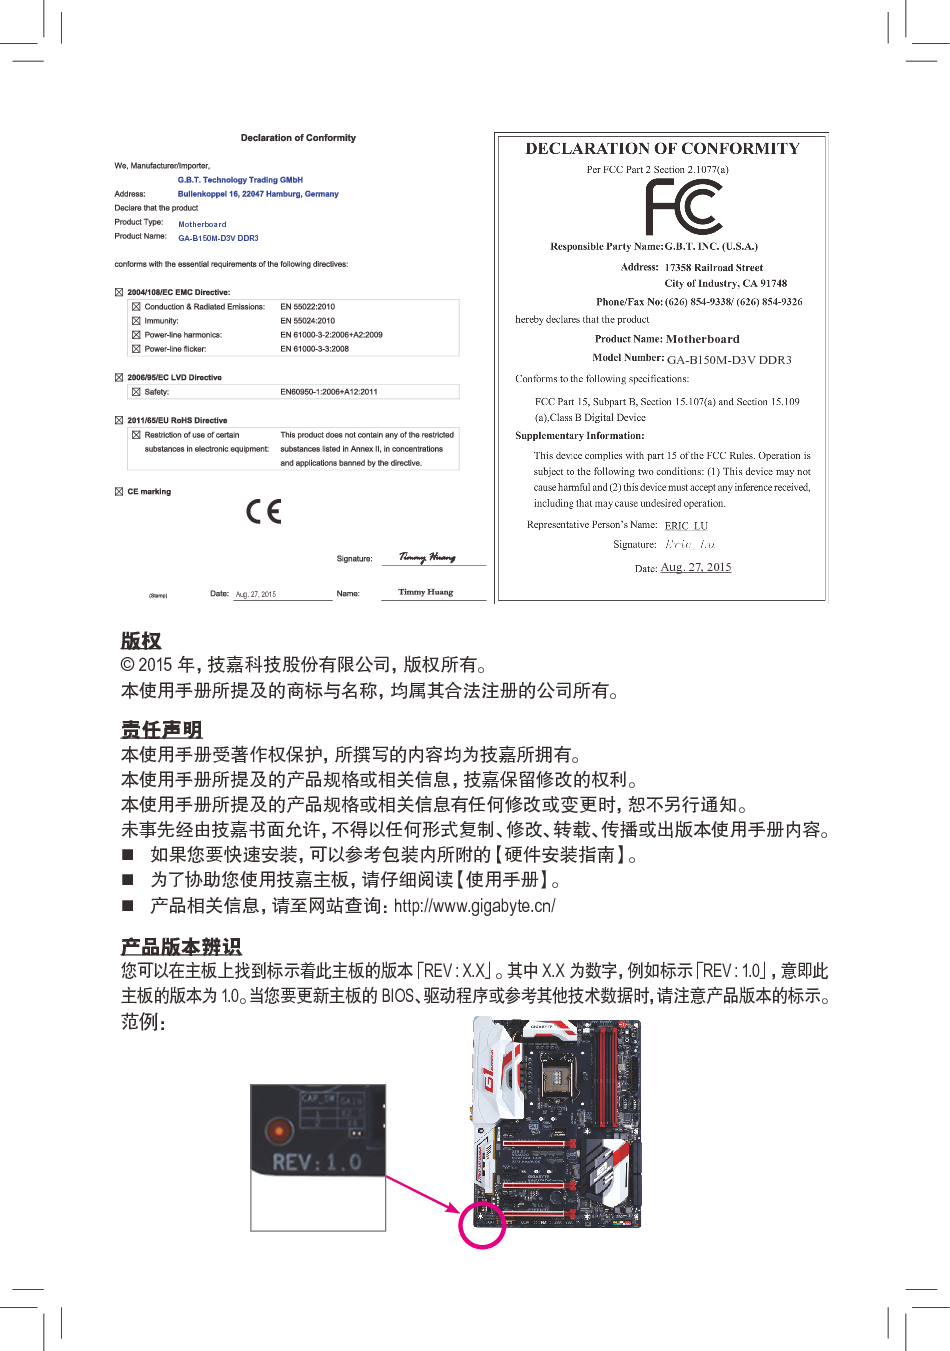 技嘉 Gigabyte GA-B150M-D3V DDR3 使用手册 第1页